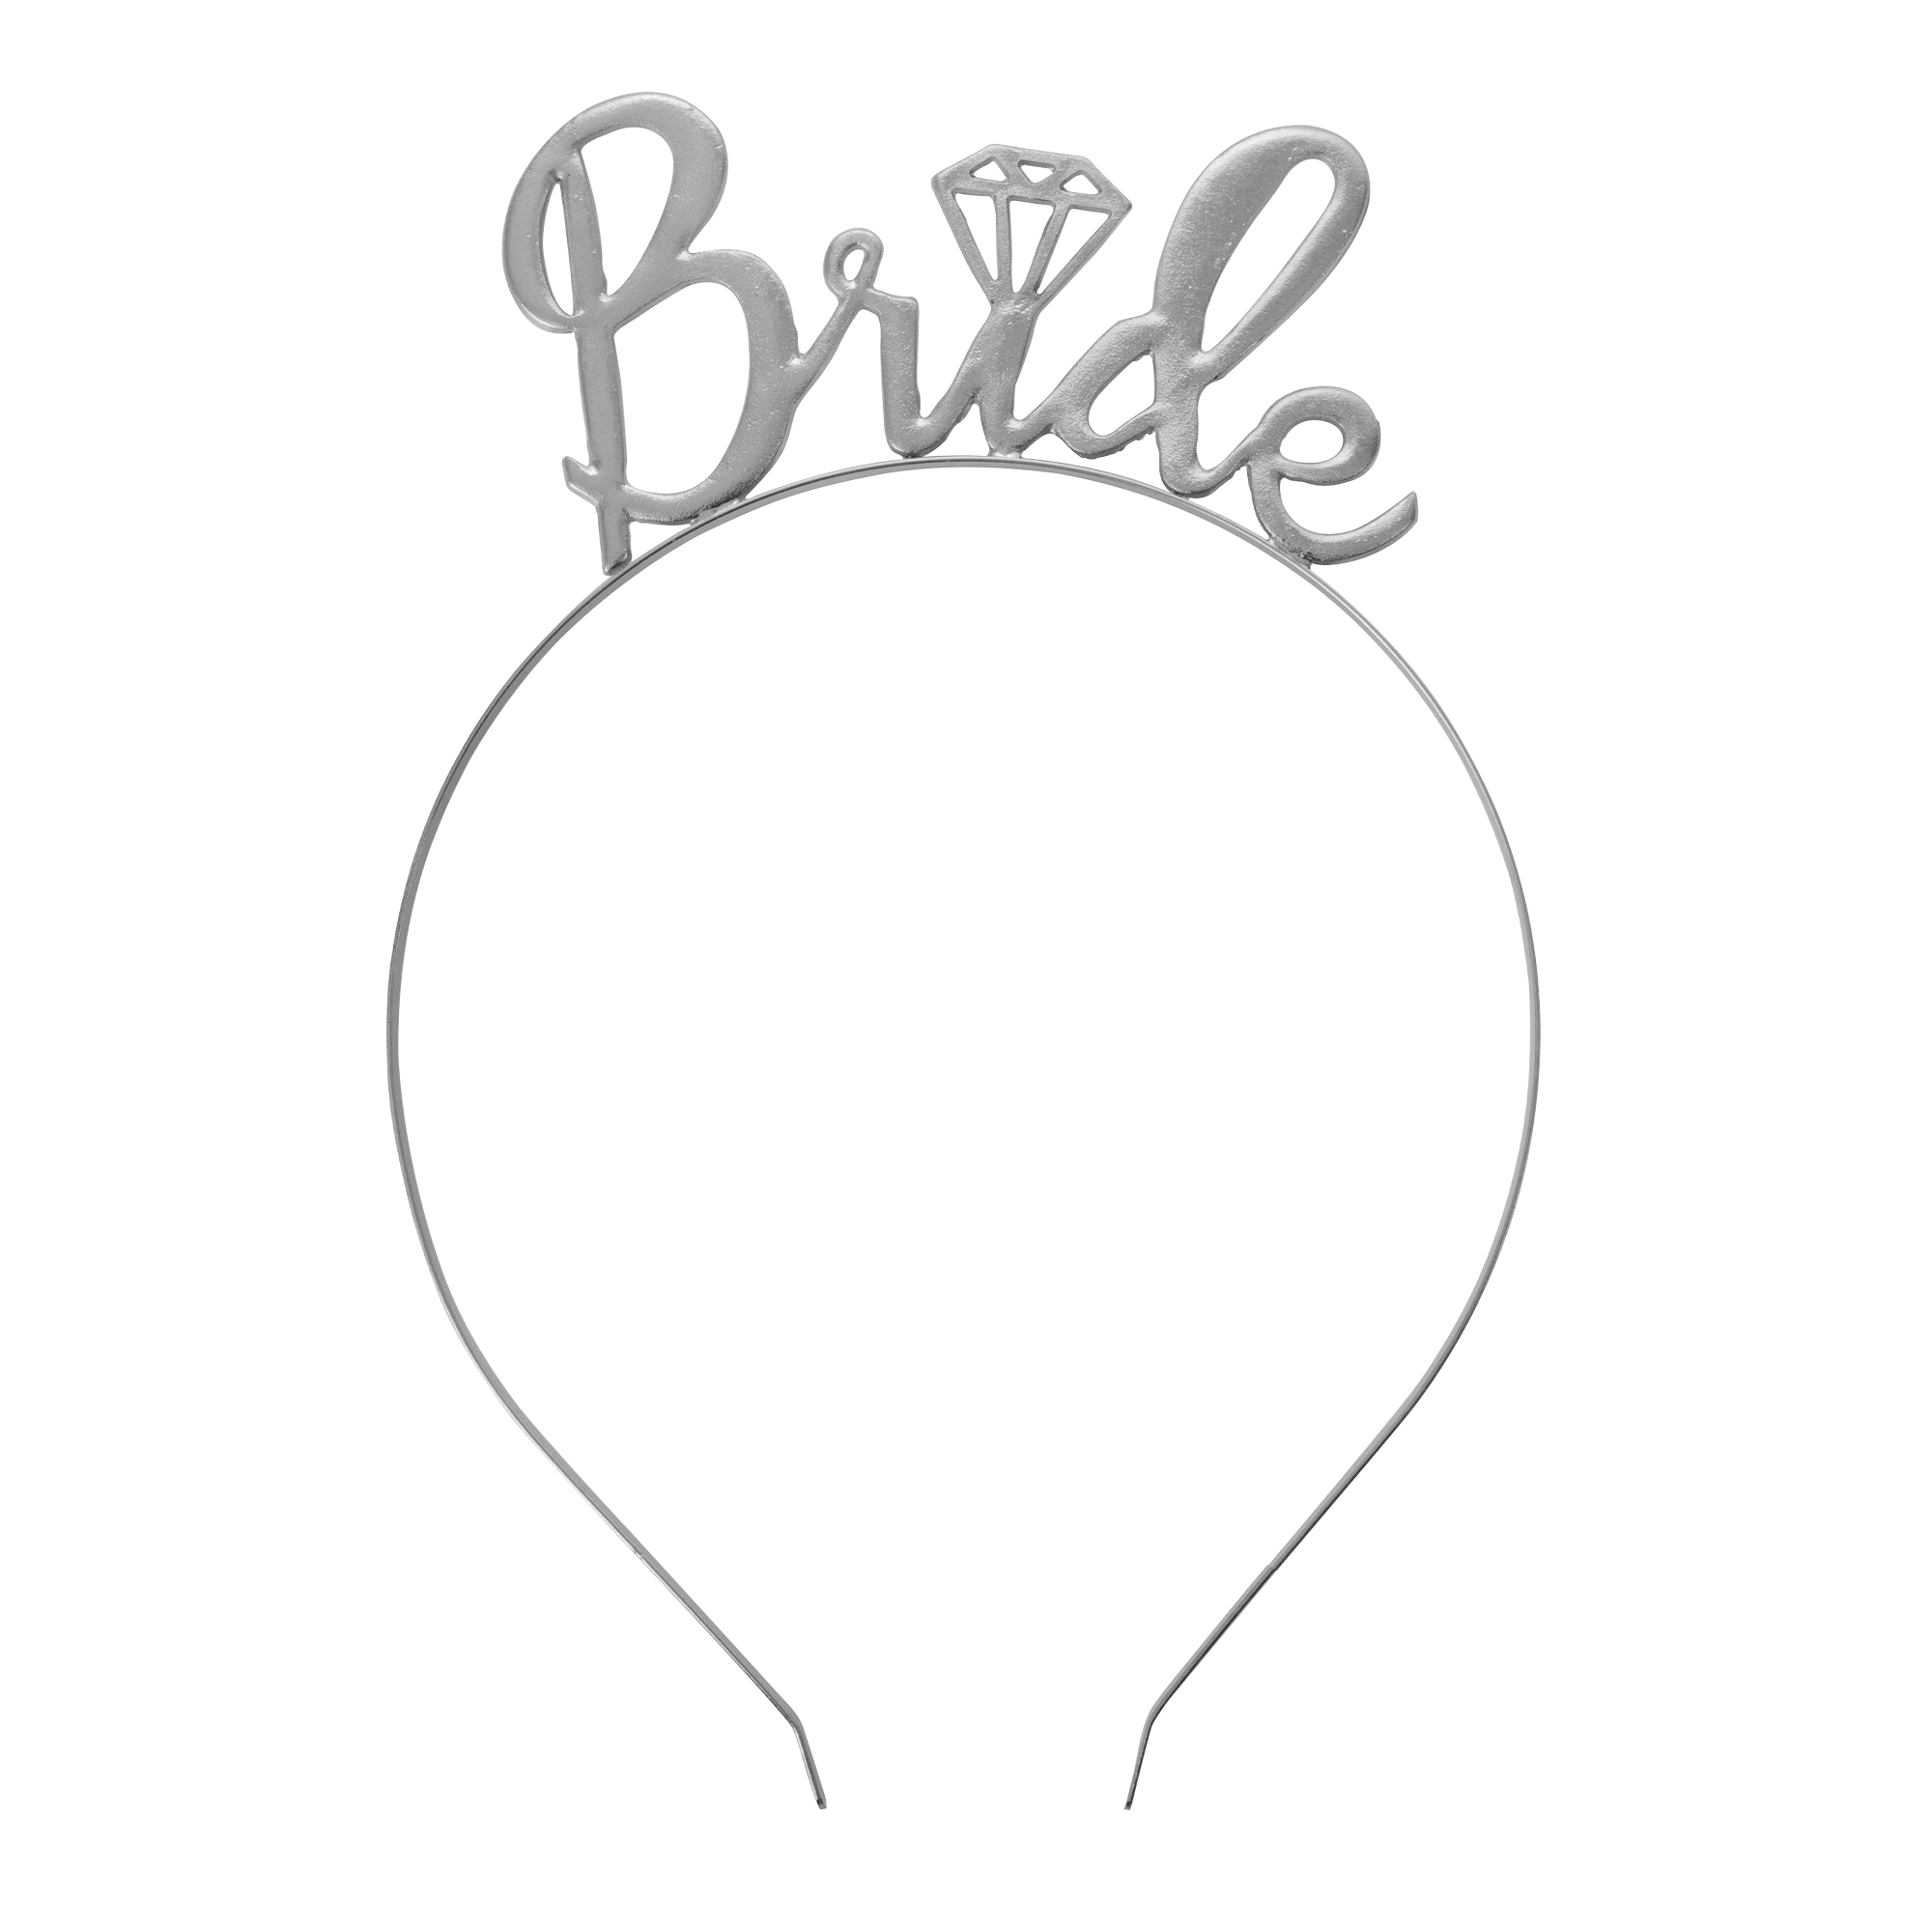 Headband "Bride" 2" - Silver